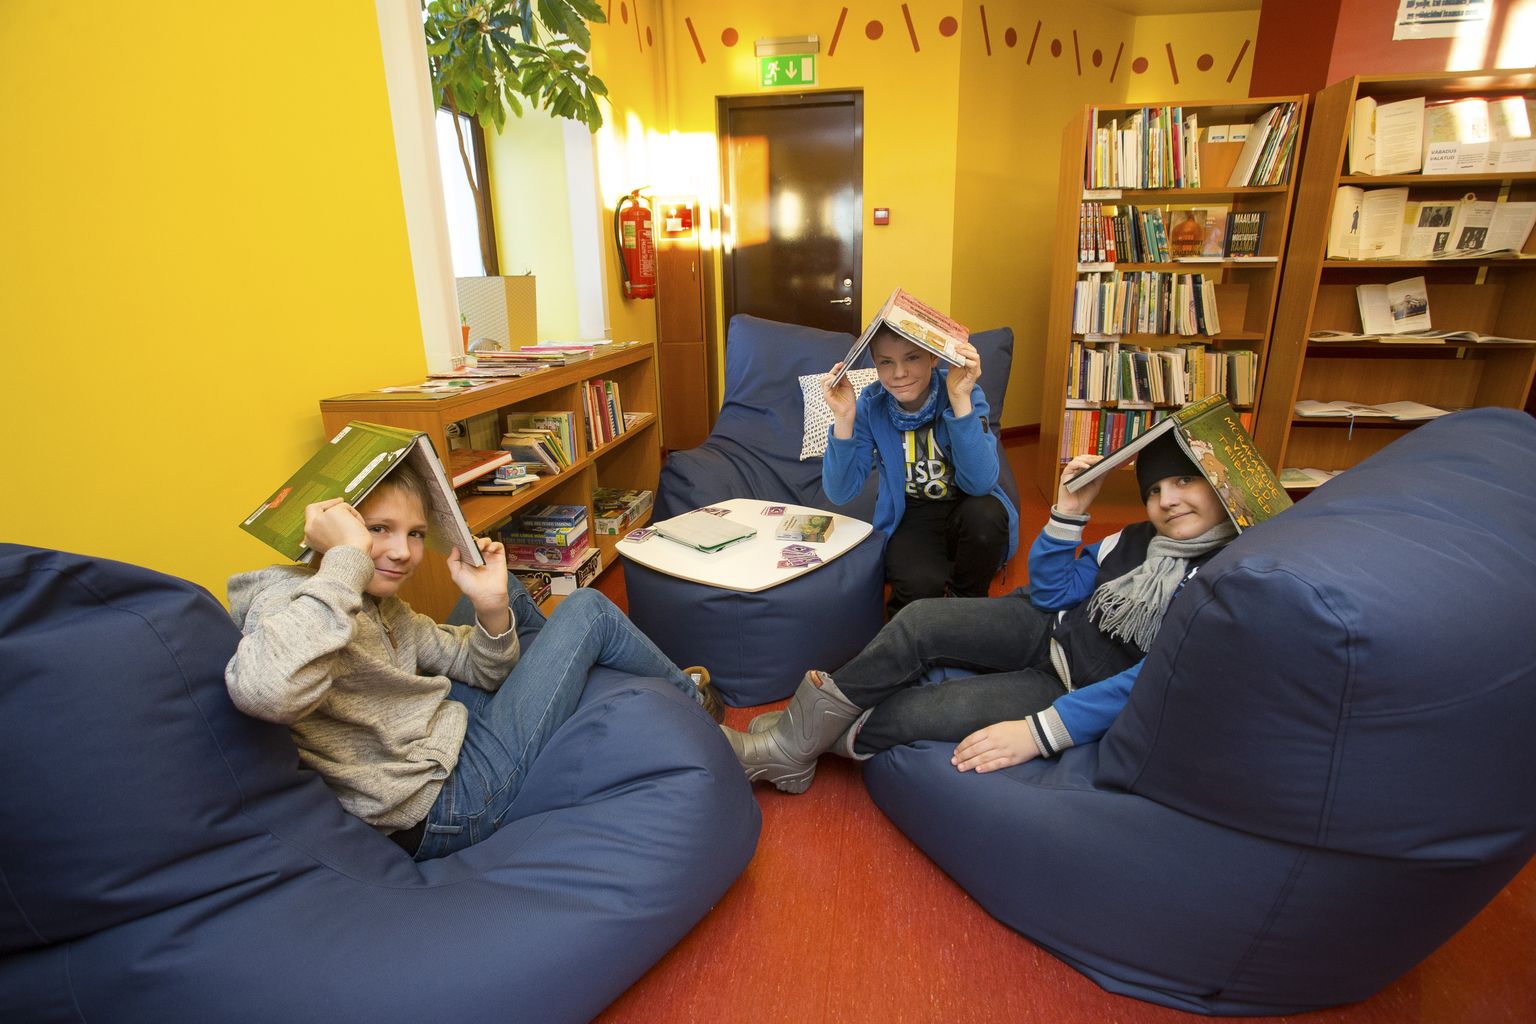 Raamatukogus leidub alati põnevat tegemist ja lugemist, kinnitavad lasteosakonna püsikülastajad Ranno (vasakult), Markus ja Lauri. Nemad käivad raamatukogus pea iga päev.